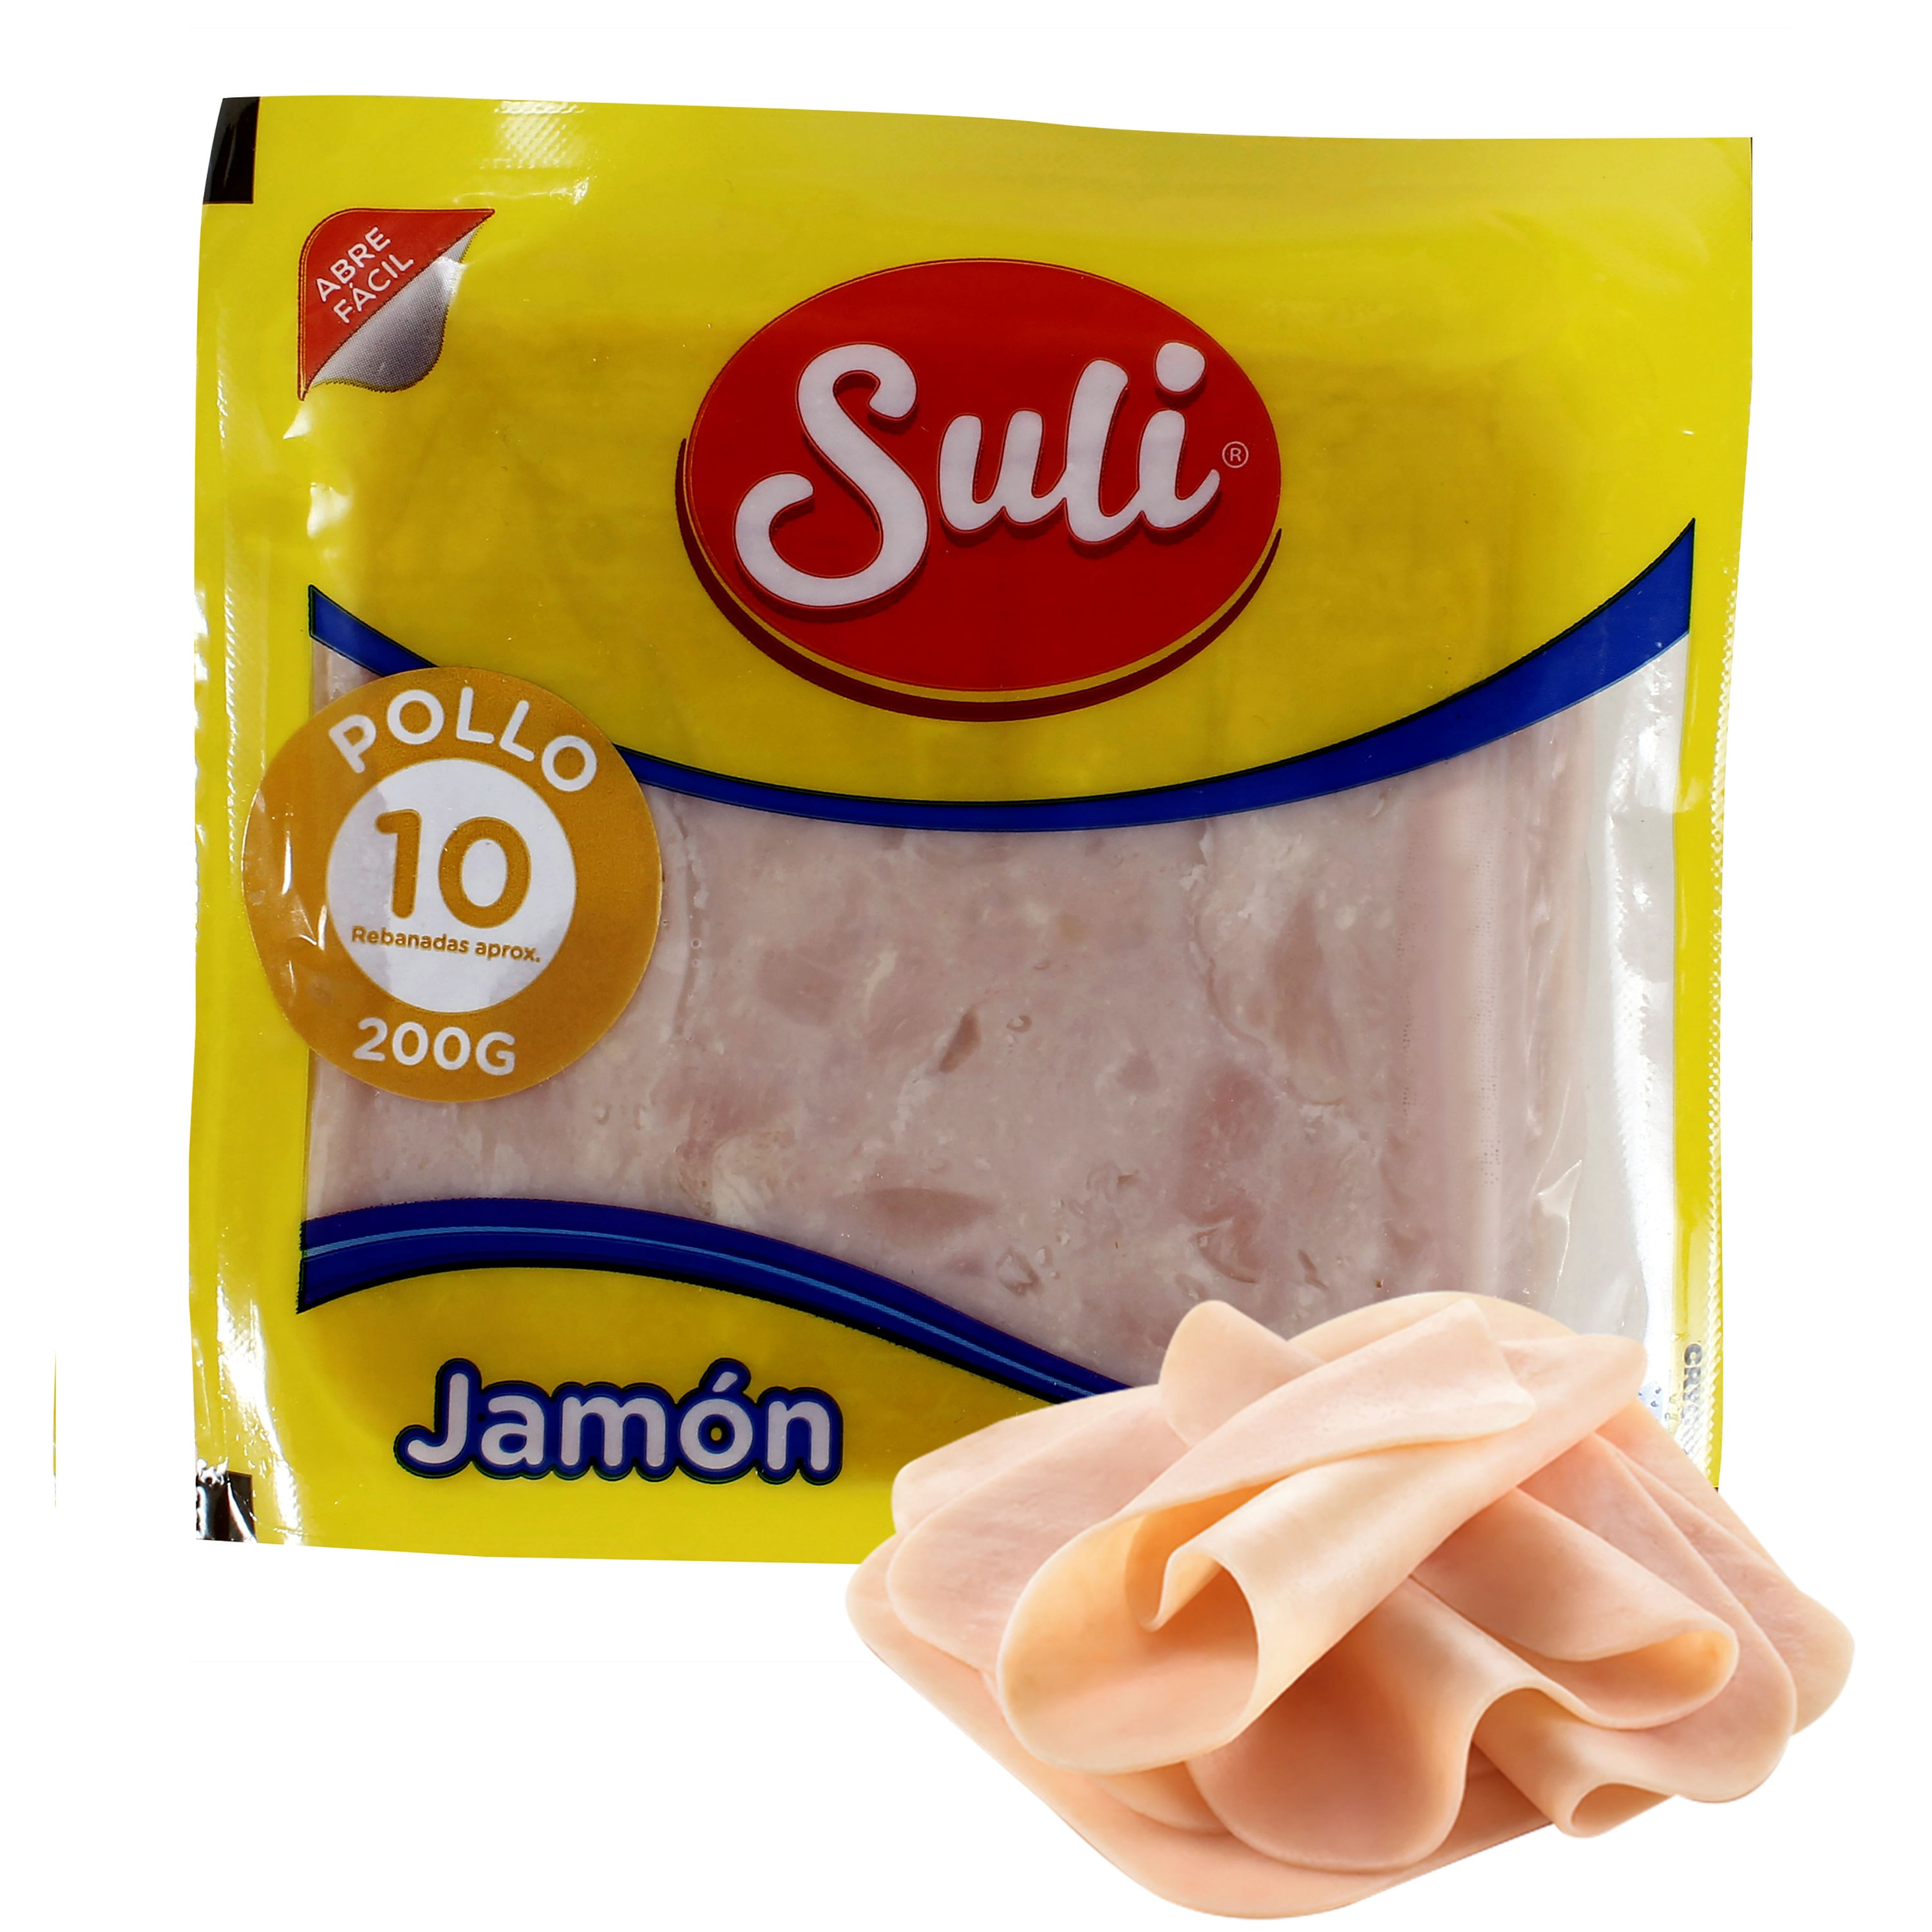 Jam-n-De-Pollo-Suli-200G-1-32036